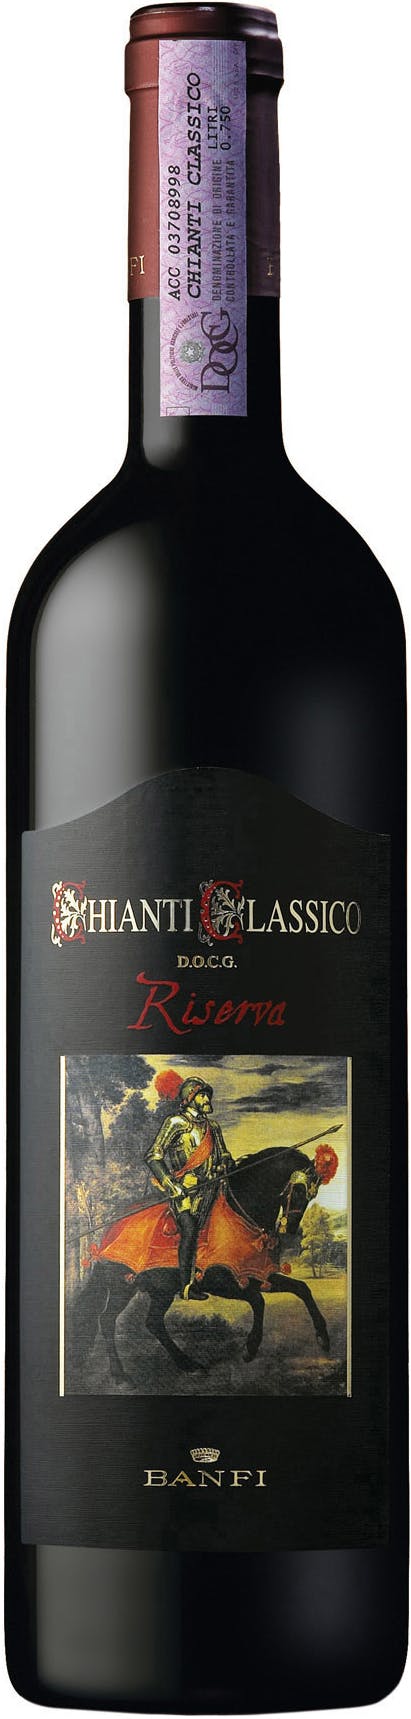 Castello Banfi Chianti Classico Riserva 750ml - Wine Liquor & Argonaut 2019